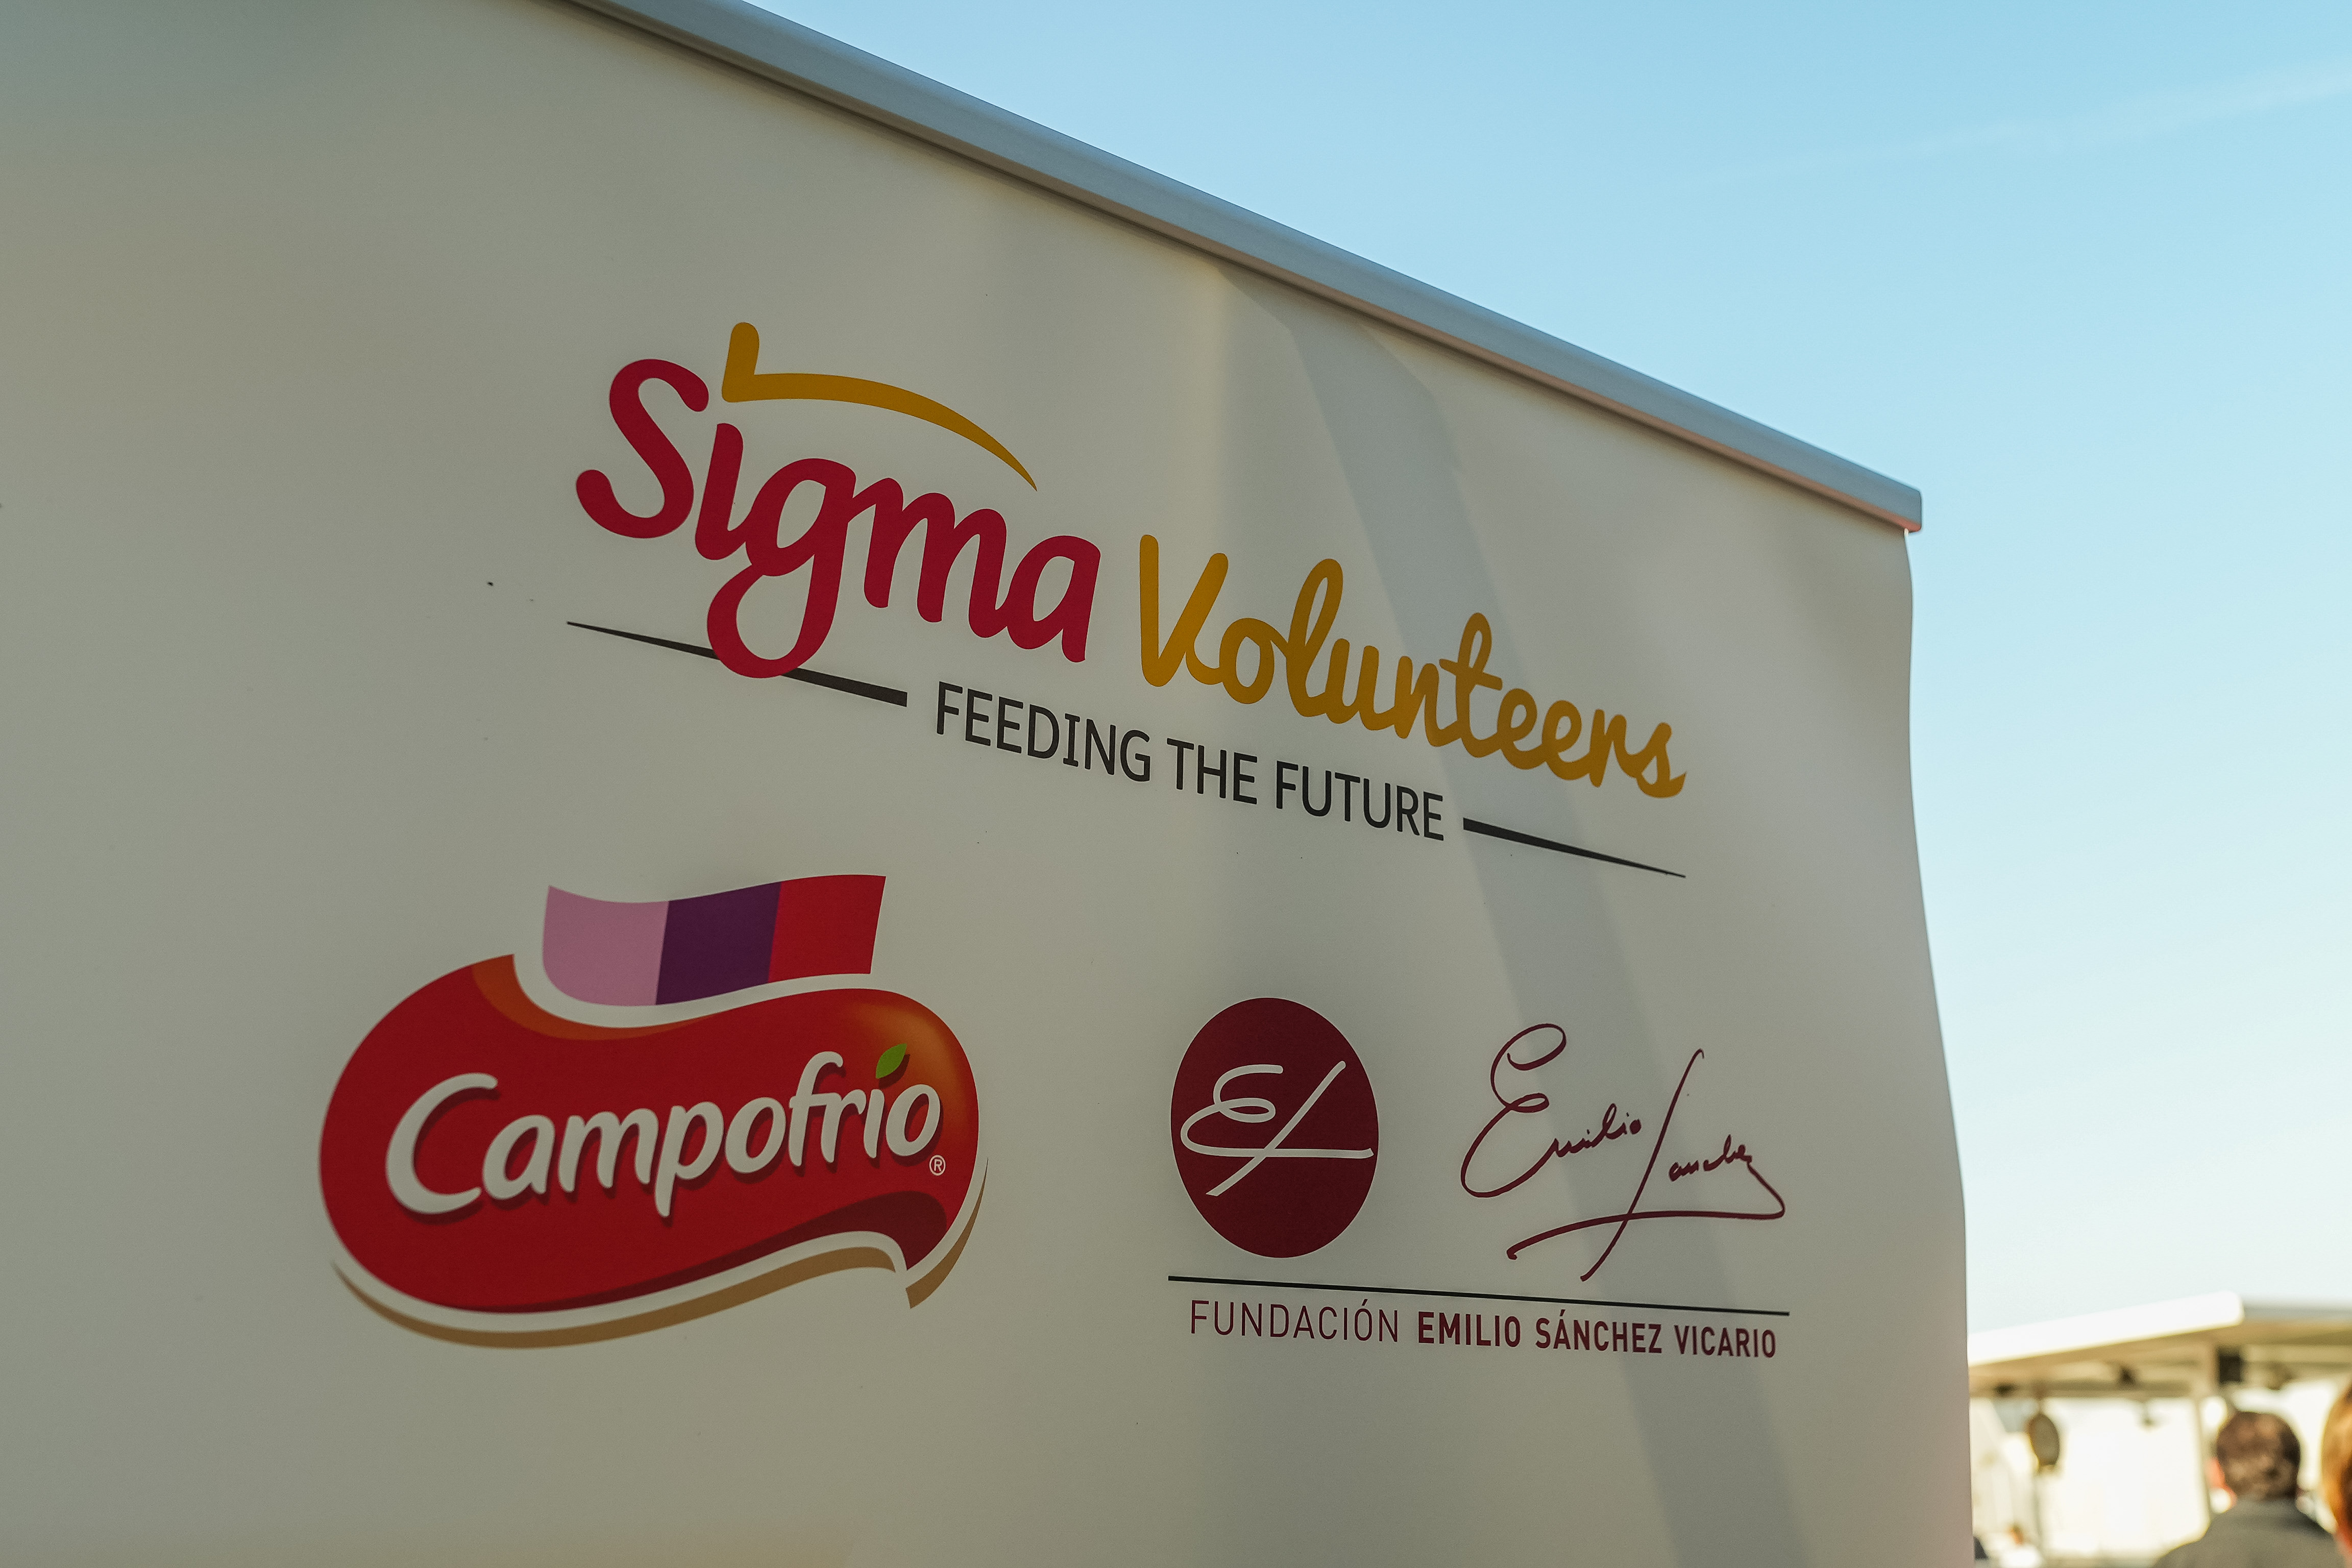 Image for Jornada de voluntariado con la Fundación Emilio Sánchez Vicario y Grupo Sigma